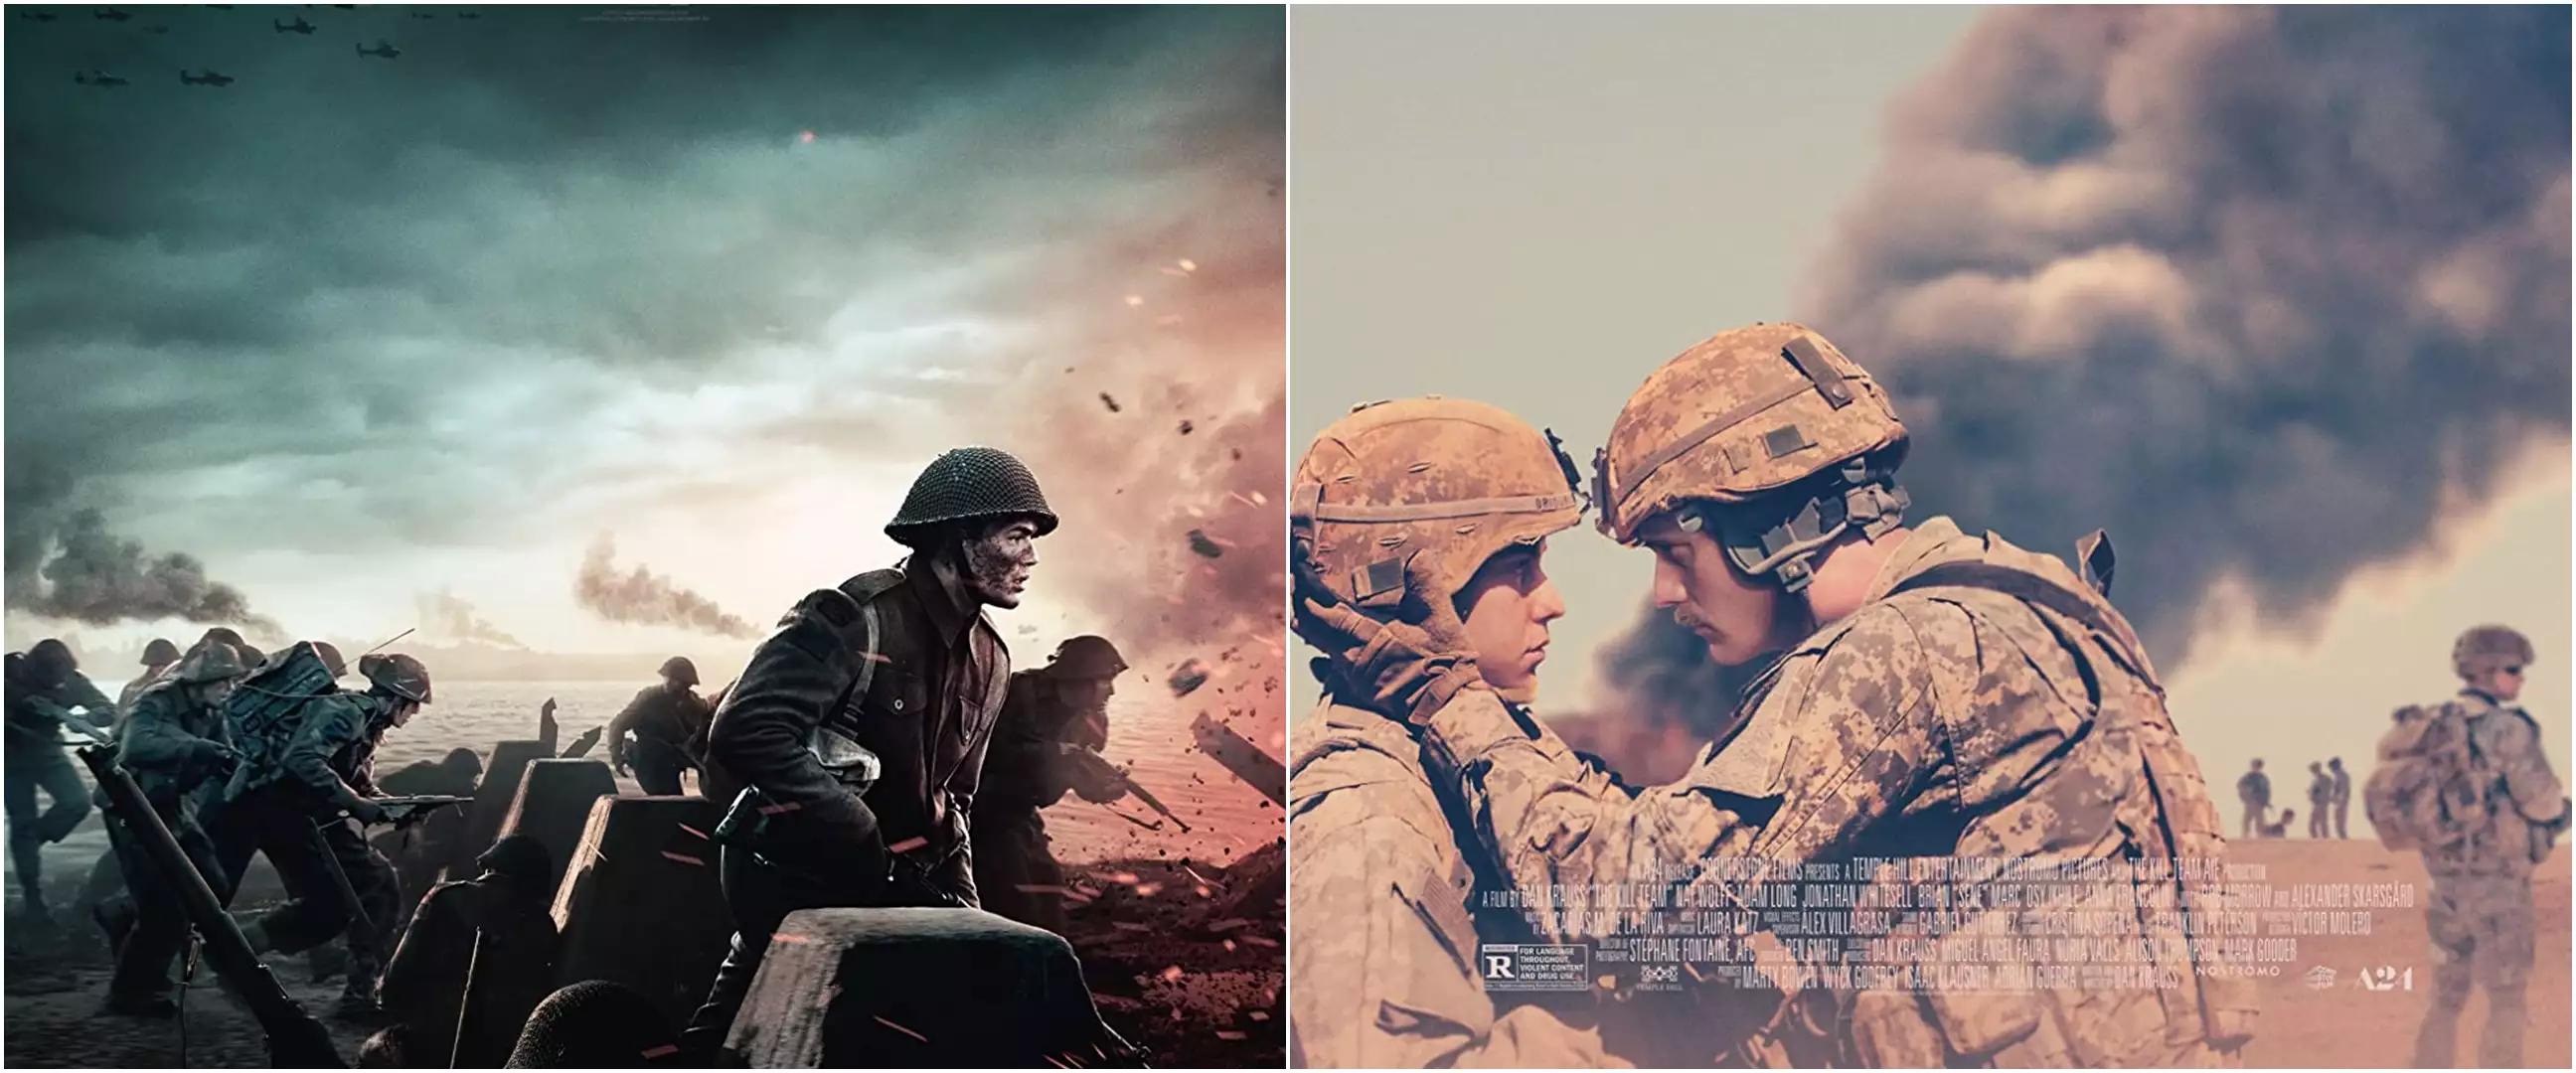 11 Film rekomendasi Netflix kisah kehidupan tentara, pilu dan heroik